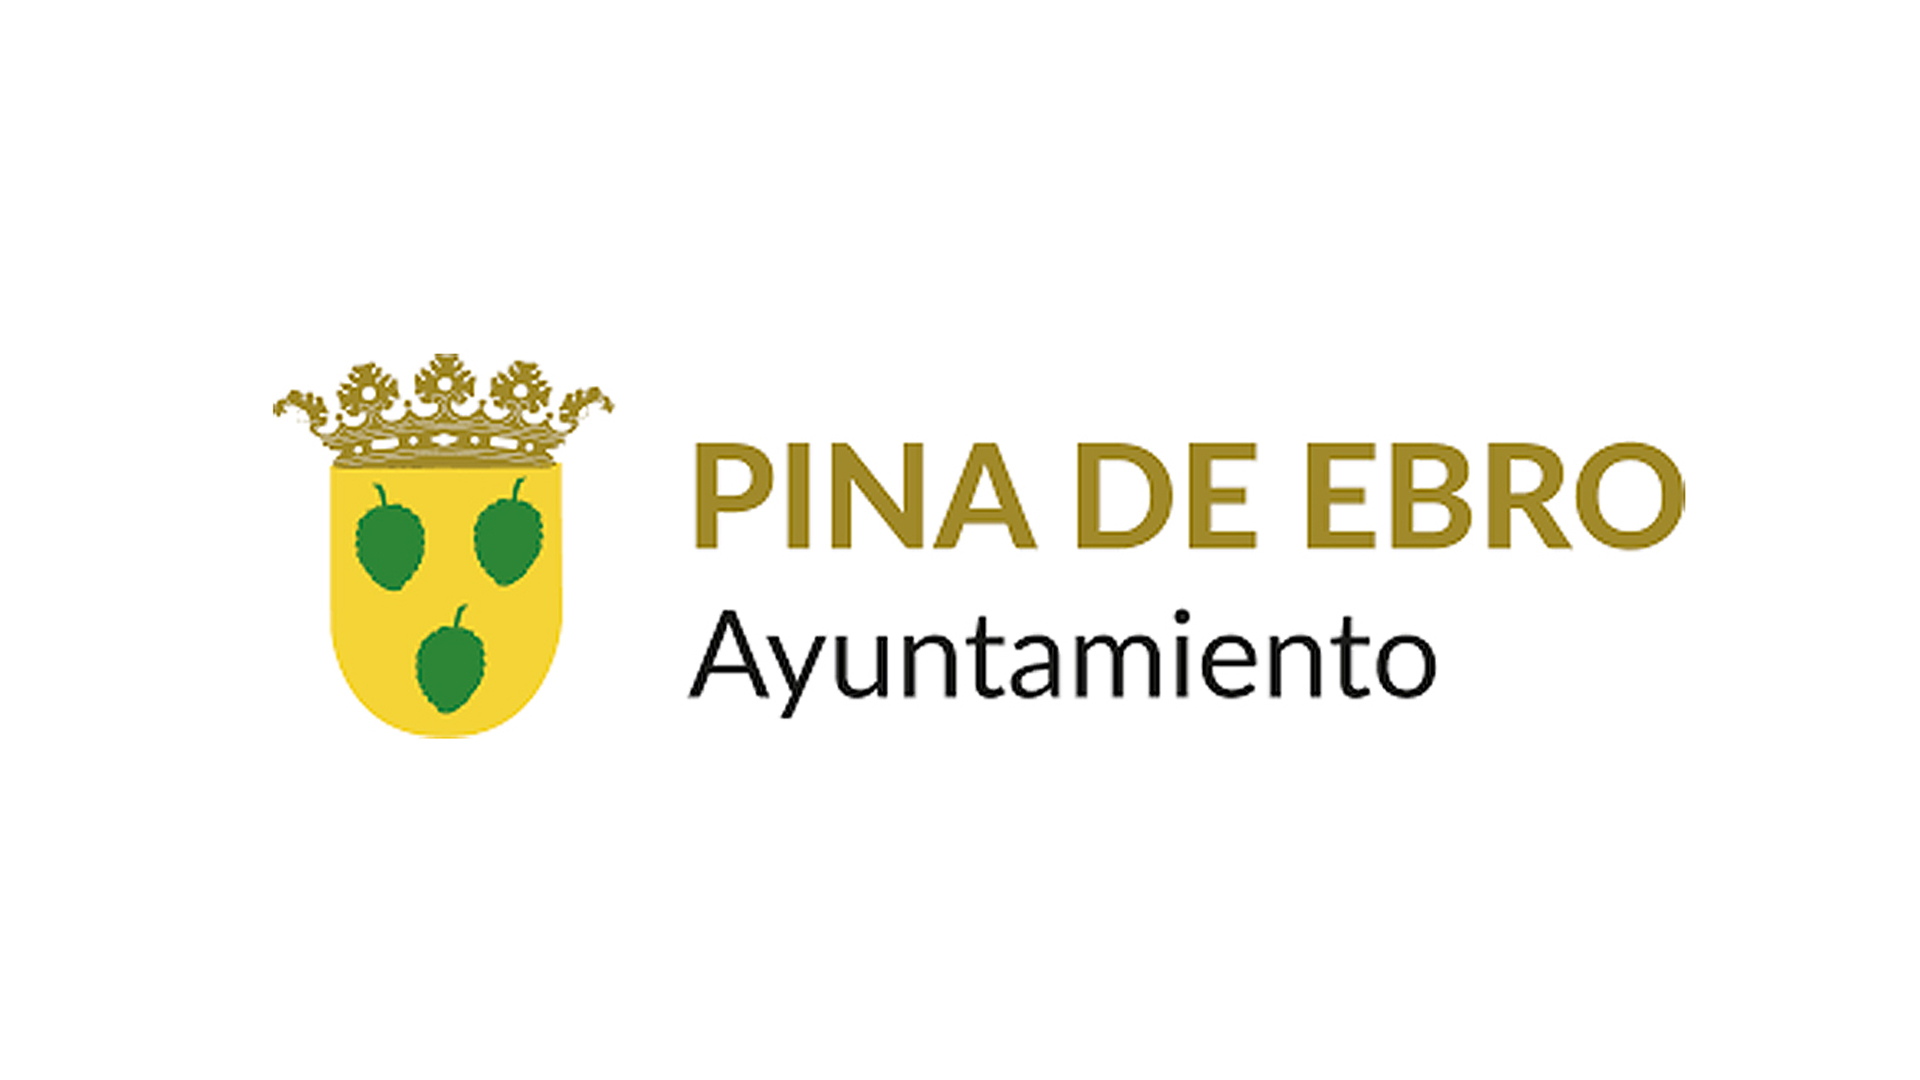 Ayuntamiento de Pina de Ebro - Clientes de ESMAS Gestión Deportiva